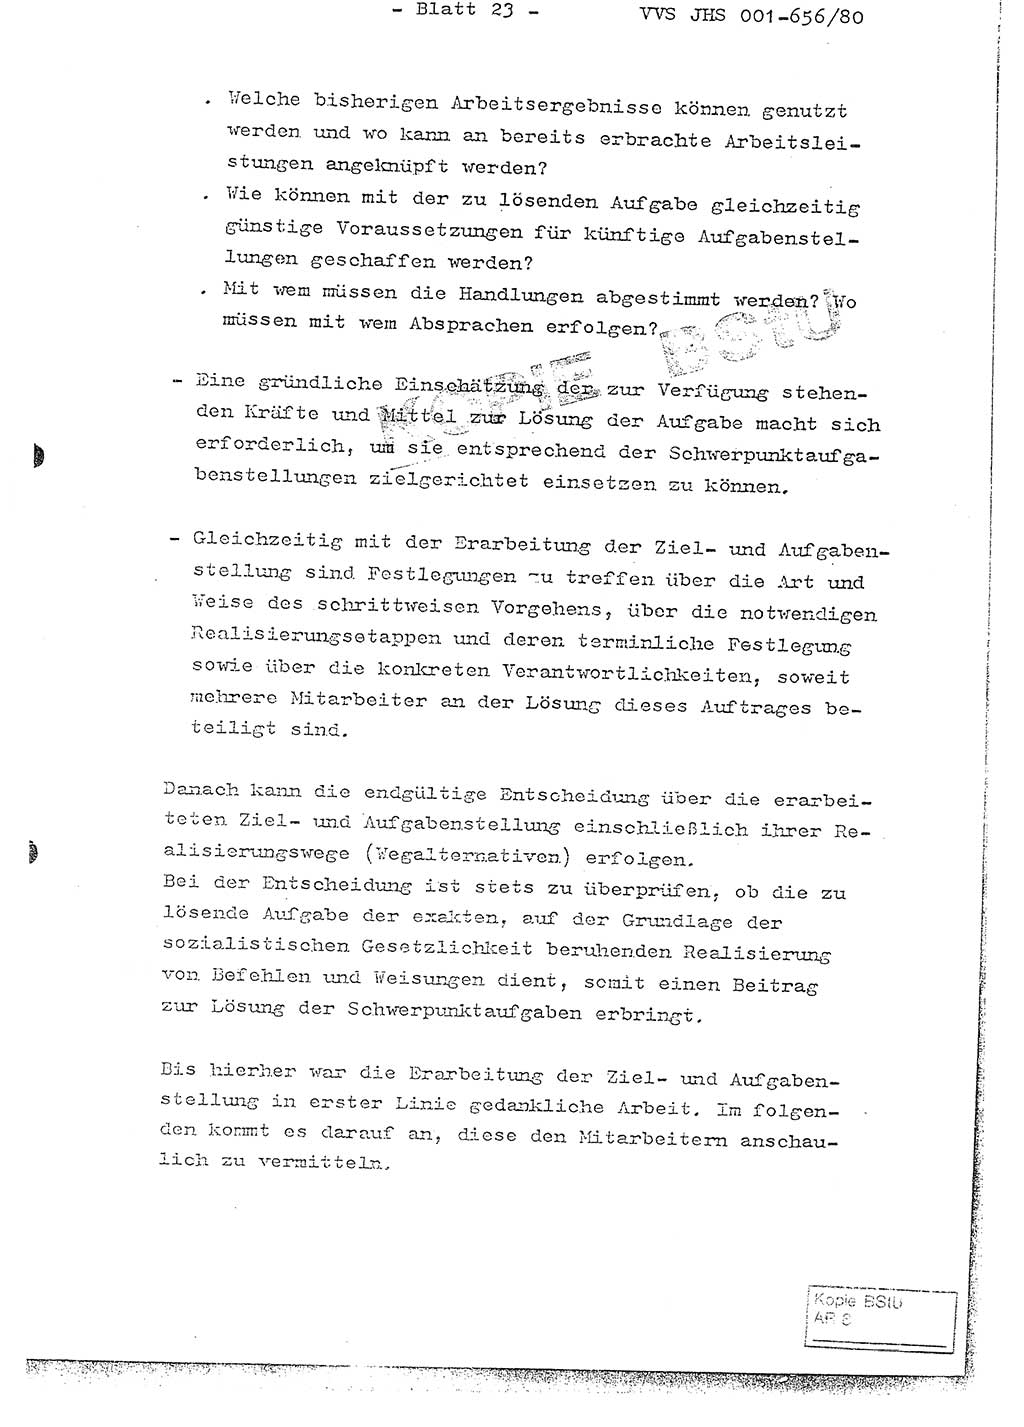 Fachschulabschlußarbeit Unterleutnant Christian Kätzel (Abt. ⅩⅣ), Ministerium für Staatssicherheit (MfS) [Deutsche Demokratische Republik (DDR)], Juristische Hochschule (JHS), Vertrauliche Verschlußsache (VVS) 001-656/80, Potsdam 1980, Blatt 23 (FS-Abschl.-Arb. MfS DDR JHS VVS 001-656/80 1980, Bl. 23)